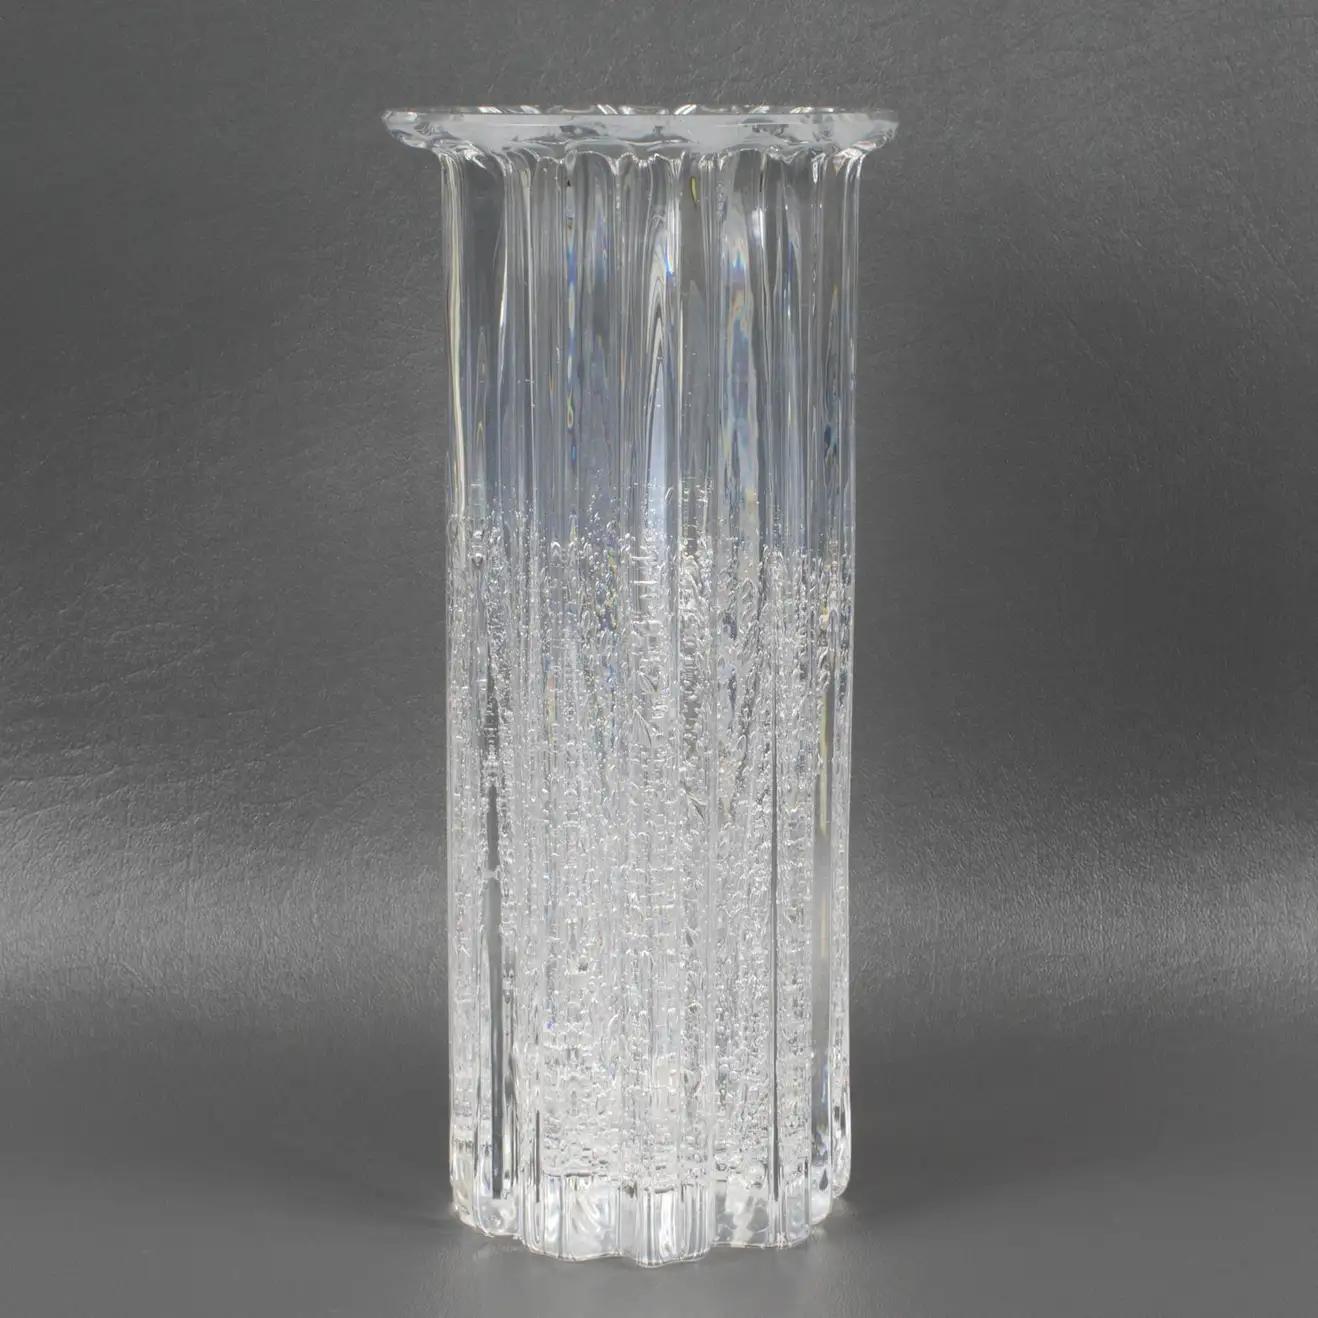 Diese schöne Vase aus Kunstglas wurde von Willy Johansson (1921 - 1993) für Hadeland Glassverk, Norwegen, entworfen. Es fühlt sich glatt an, aber es sieht stark strukturiert aus, mit Rippen und Blasen, die im Glas eingeschlossen sind. Diese Vase aus